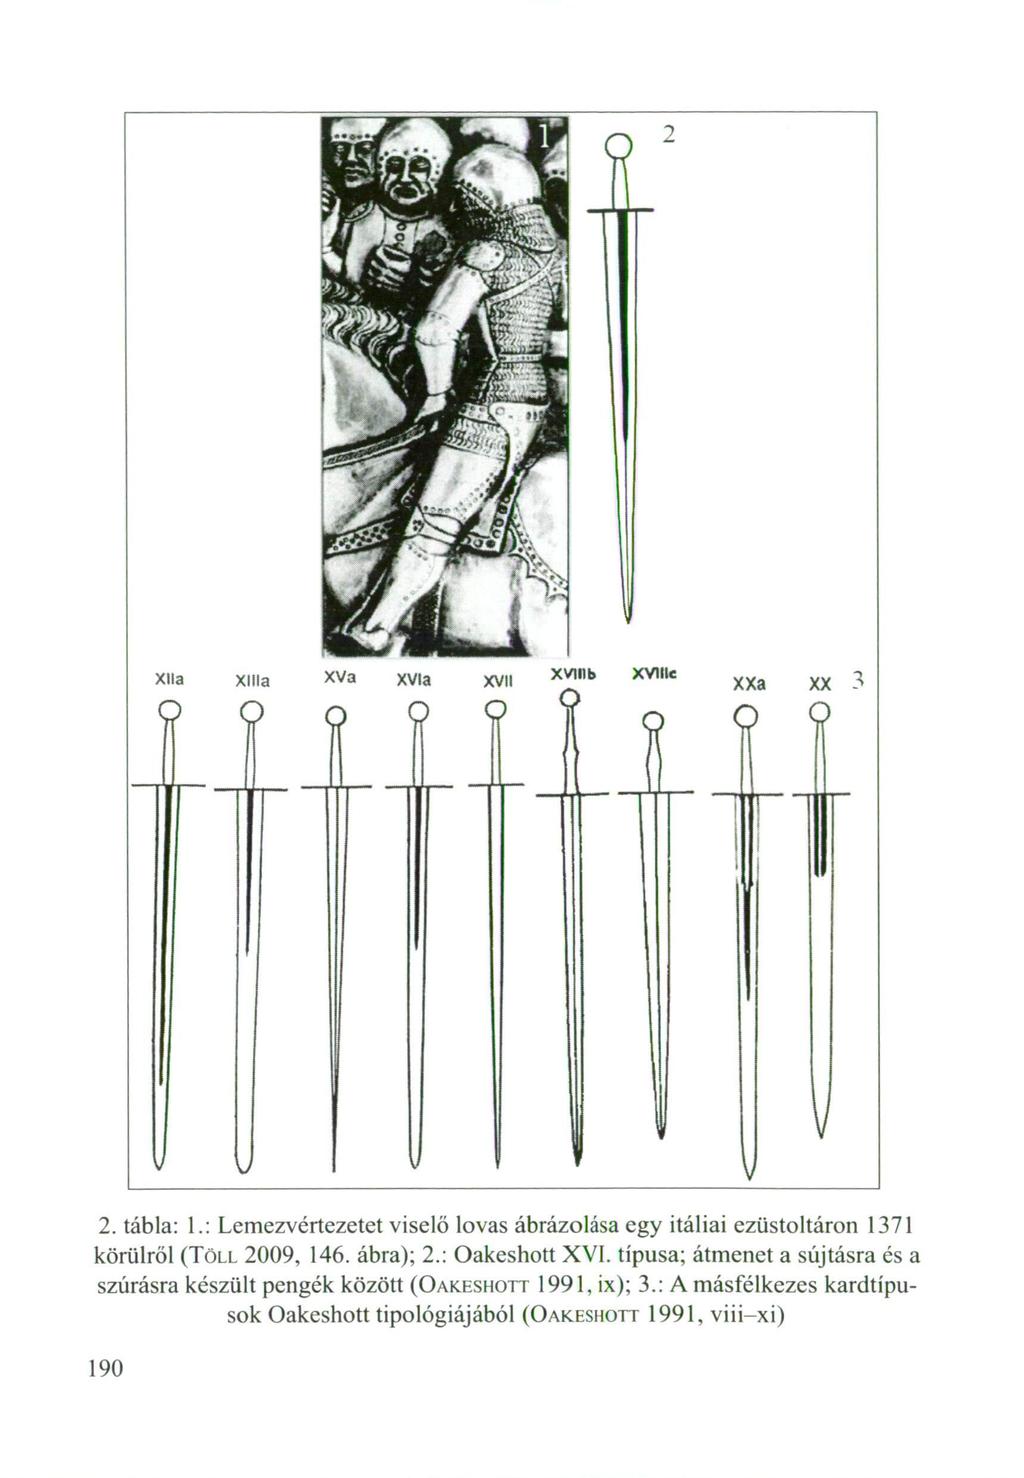 2. tábla: 1.: Lemezvértezetet viselő lovas ábrázolása egy itáliai ezüstoltáron 1371 körűiről (TÖLL 2009, 146. ábra); 2.: Oakeshott XVI.